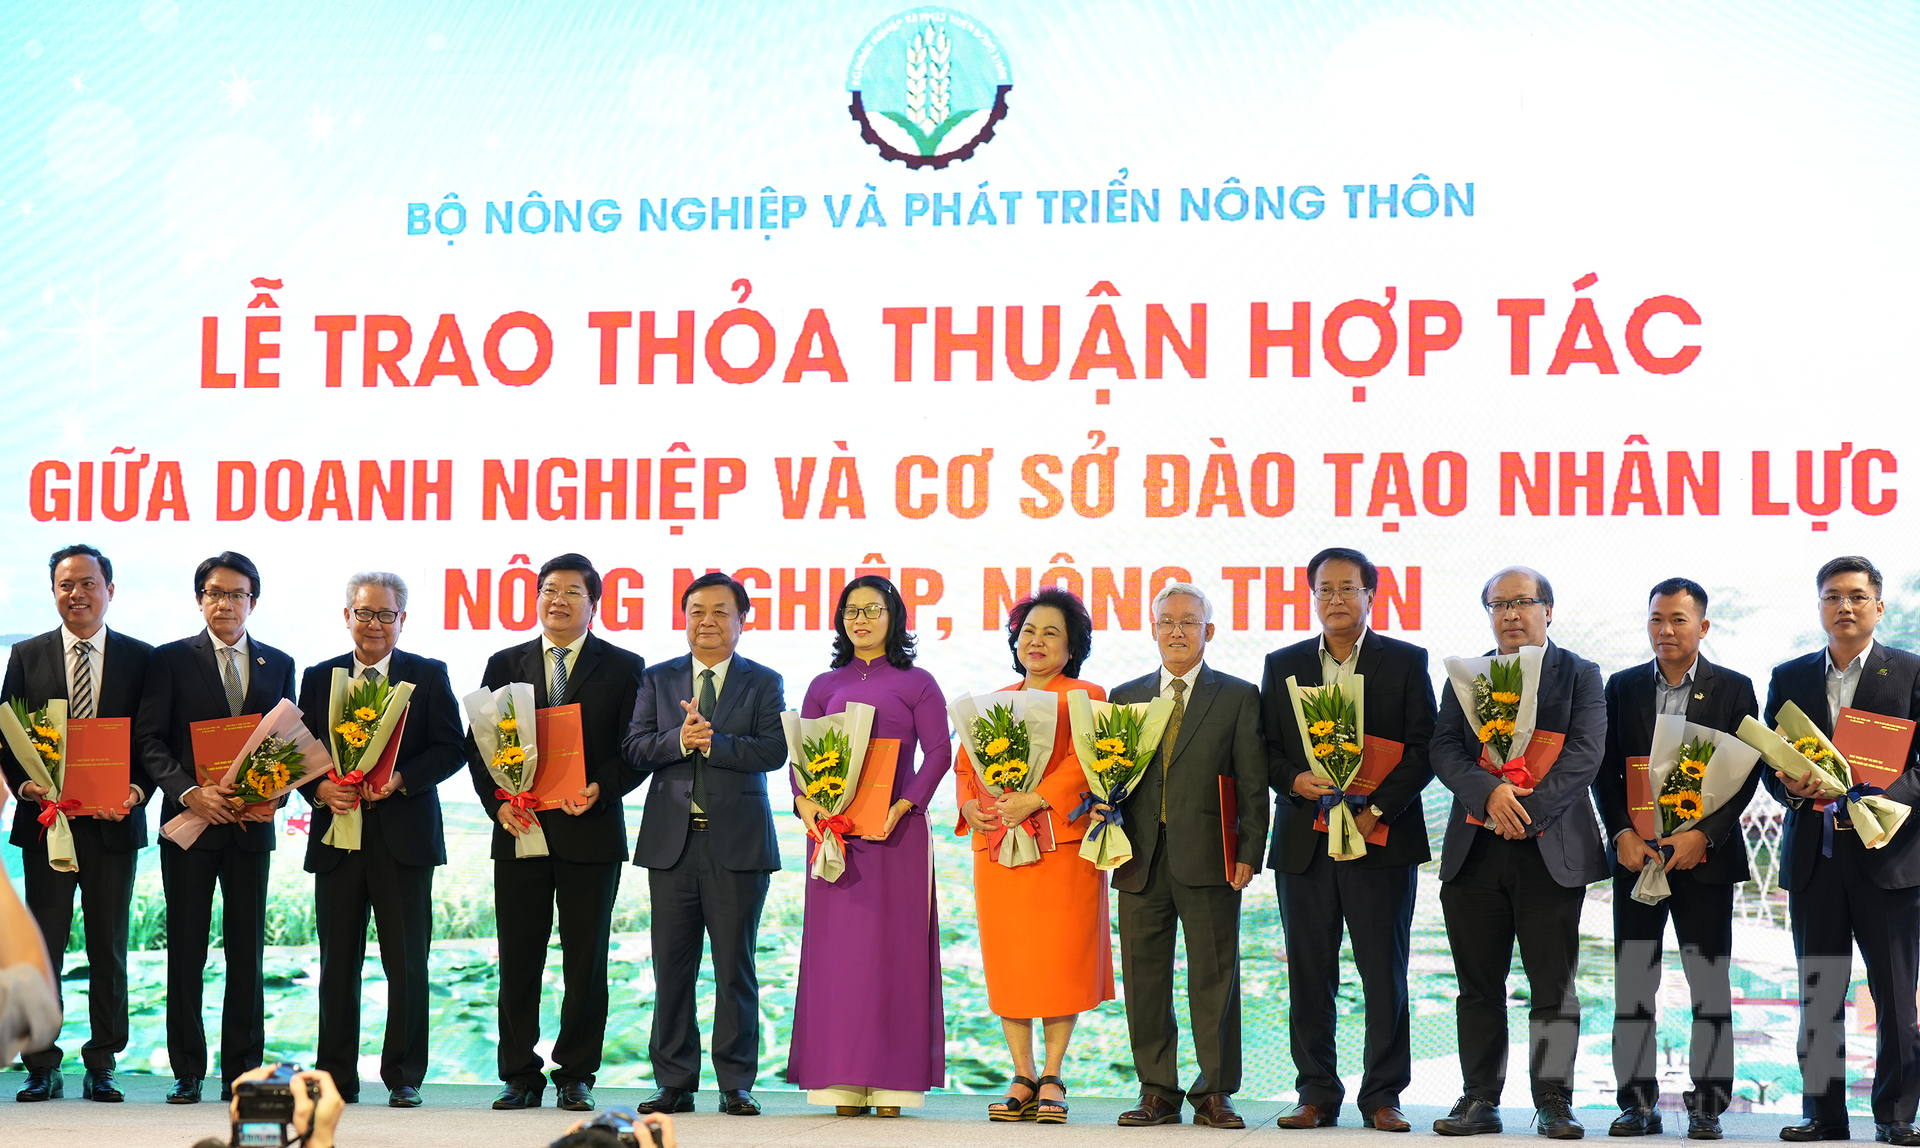 Học viện Nông nghiệp Việt Nam đã thỏa thuận hợp tác trong đào tạo nguồn nhân lực nông nghiệp, nông thôn với các doanh nghiệp, hiệp hội. Ảnh: Phúc Lập.